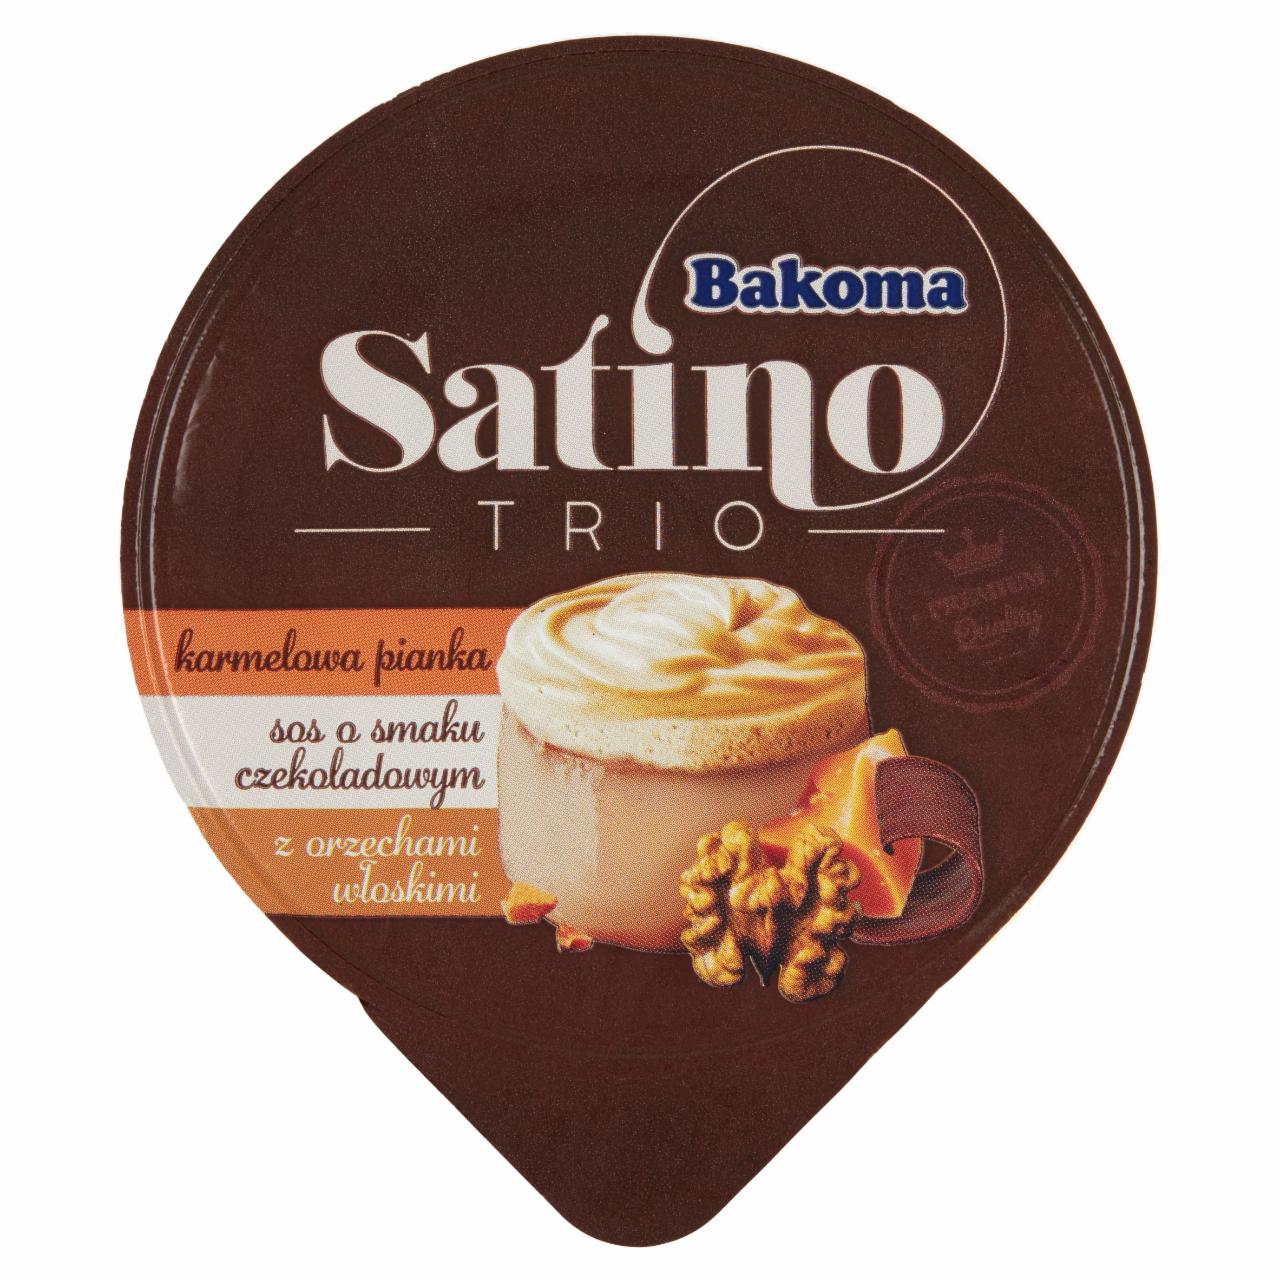 Zdjęcia - Bakoma Satino Trio Deser karmelowa pianka sos o smaku czekoladowym z orzechami włoskimi 100 g